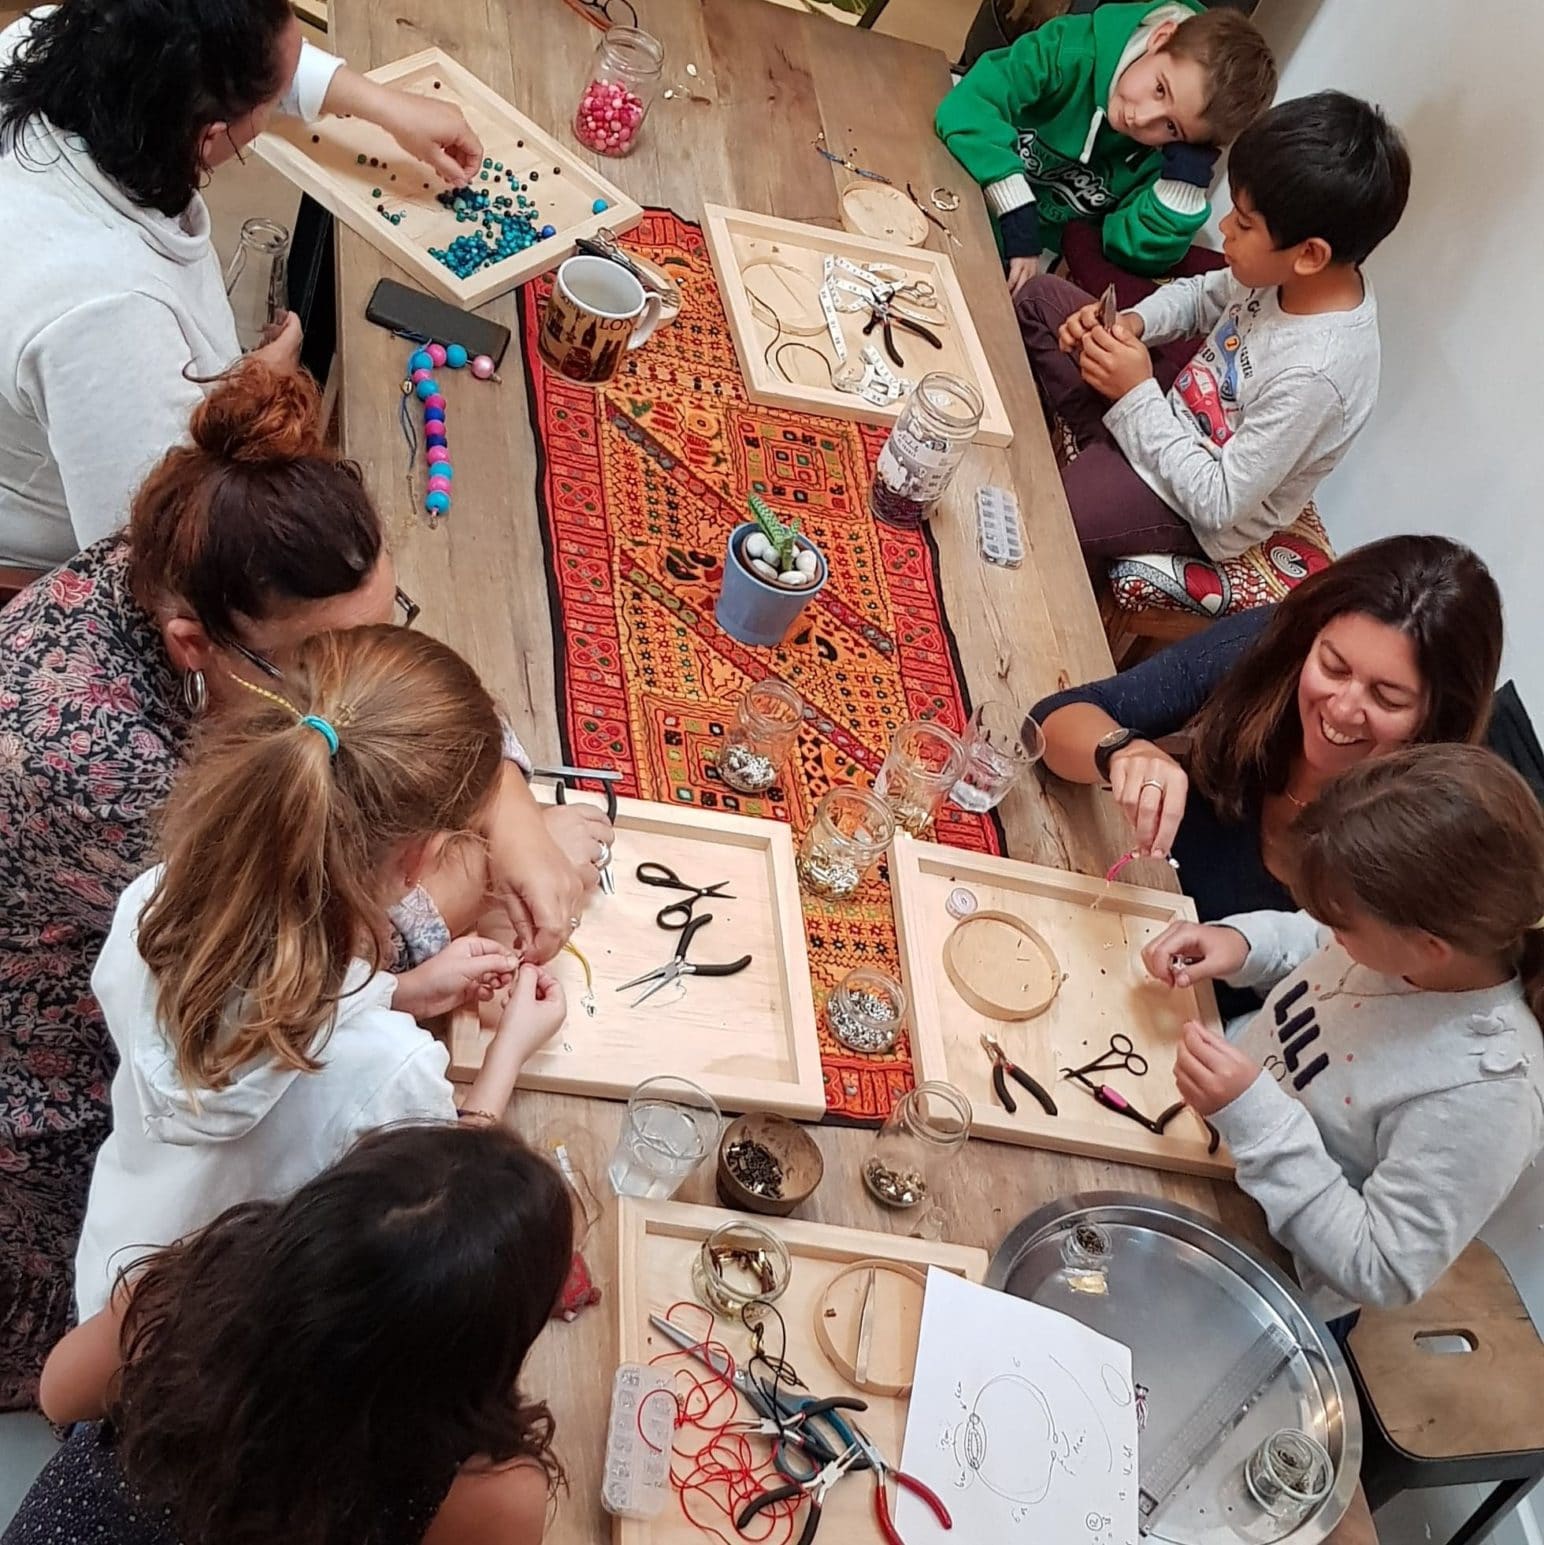 Création bijoux à domicile - Atelier Enfant Paris